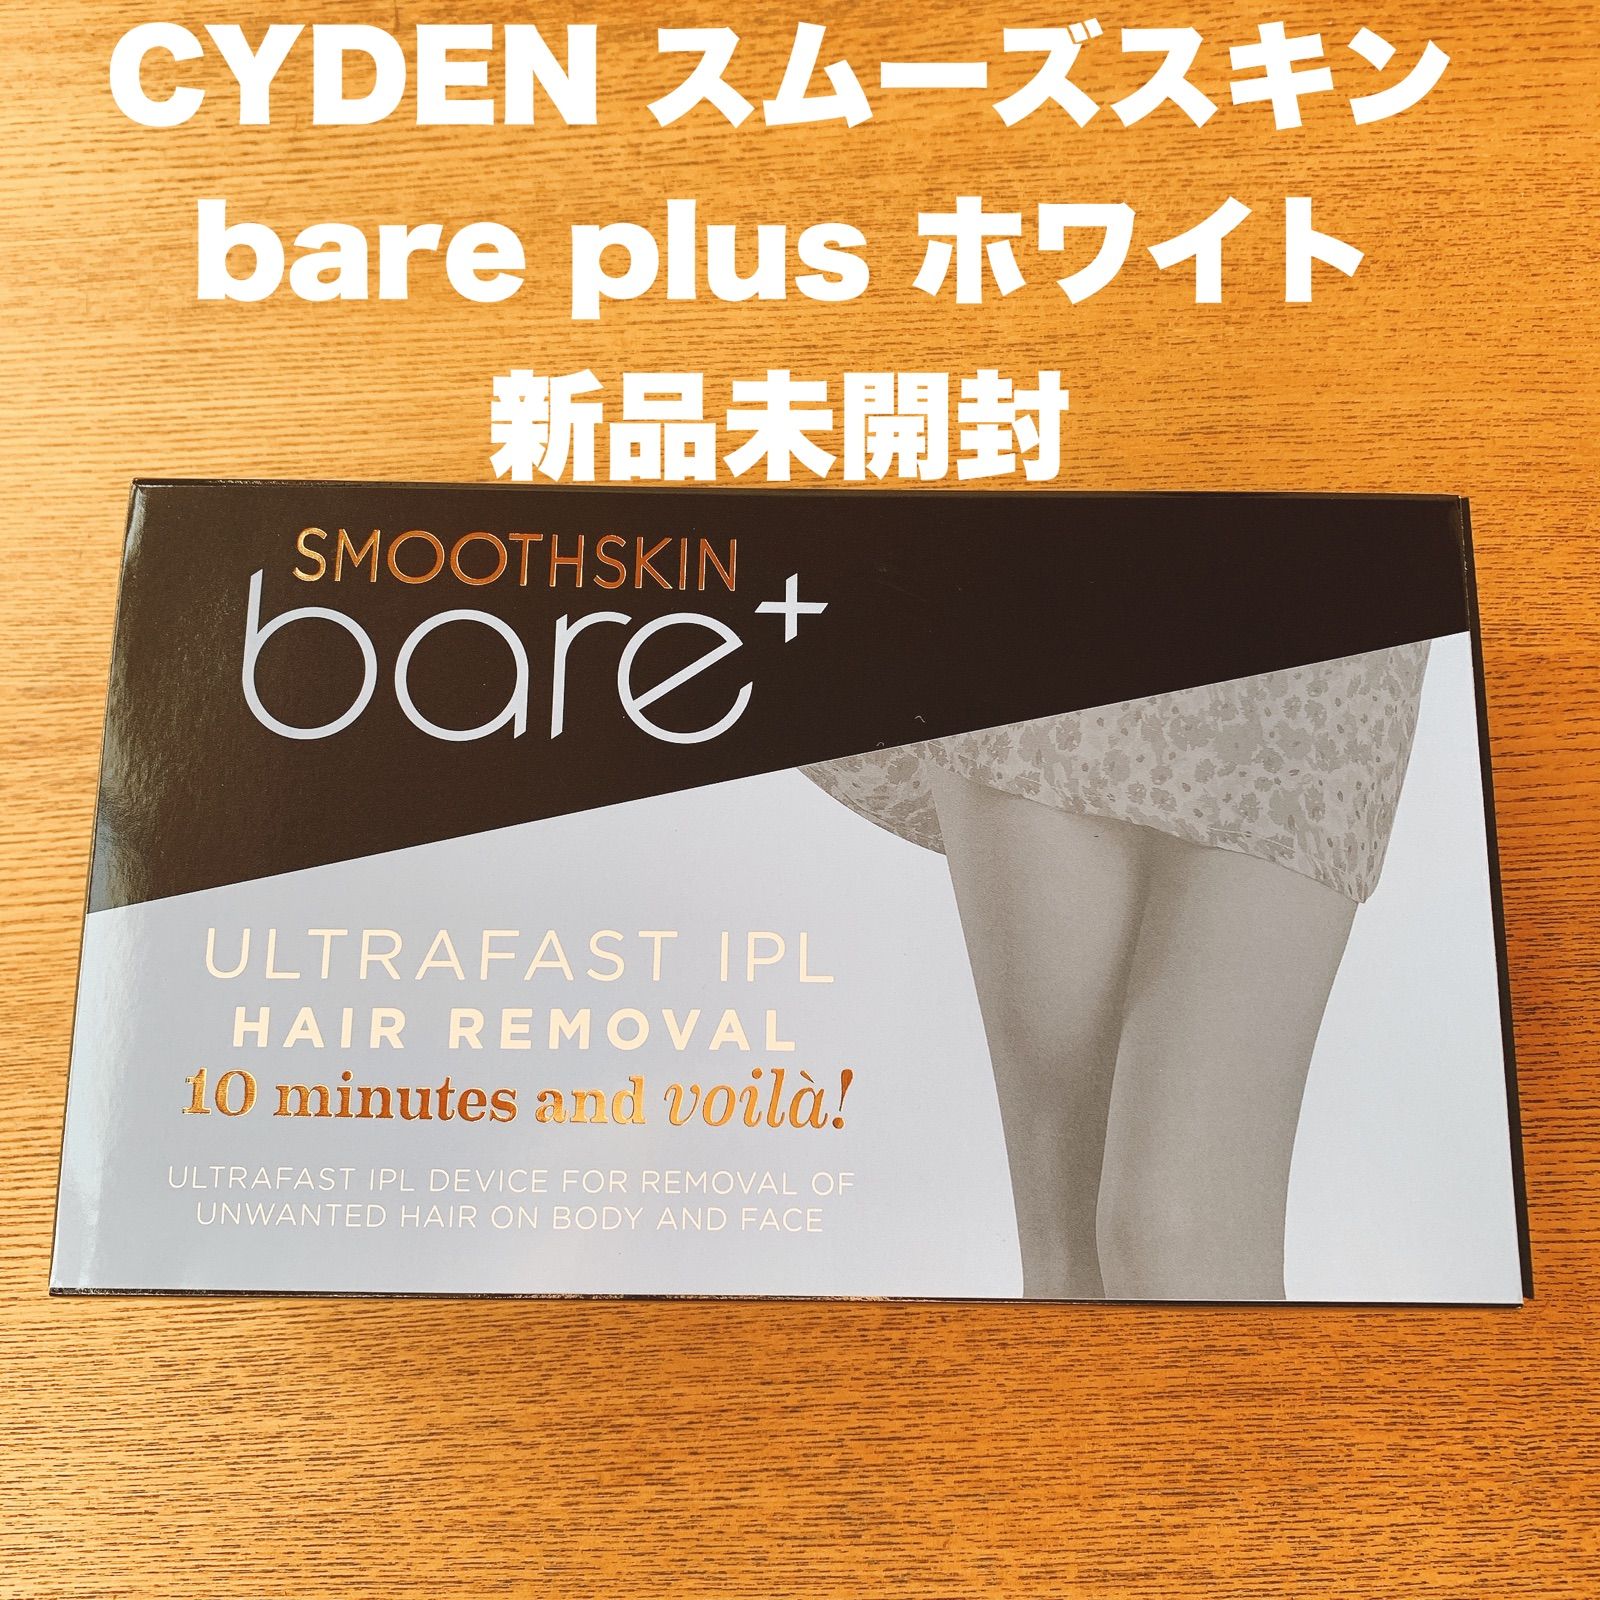 【新品未使用品】 CYDEN スムーズスキン bare plus ホワイト光脱毛美容器